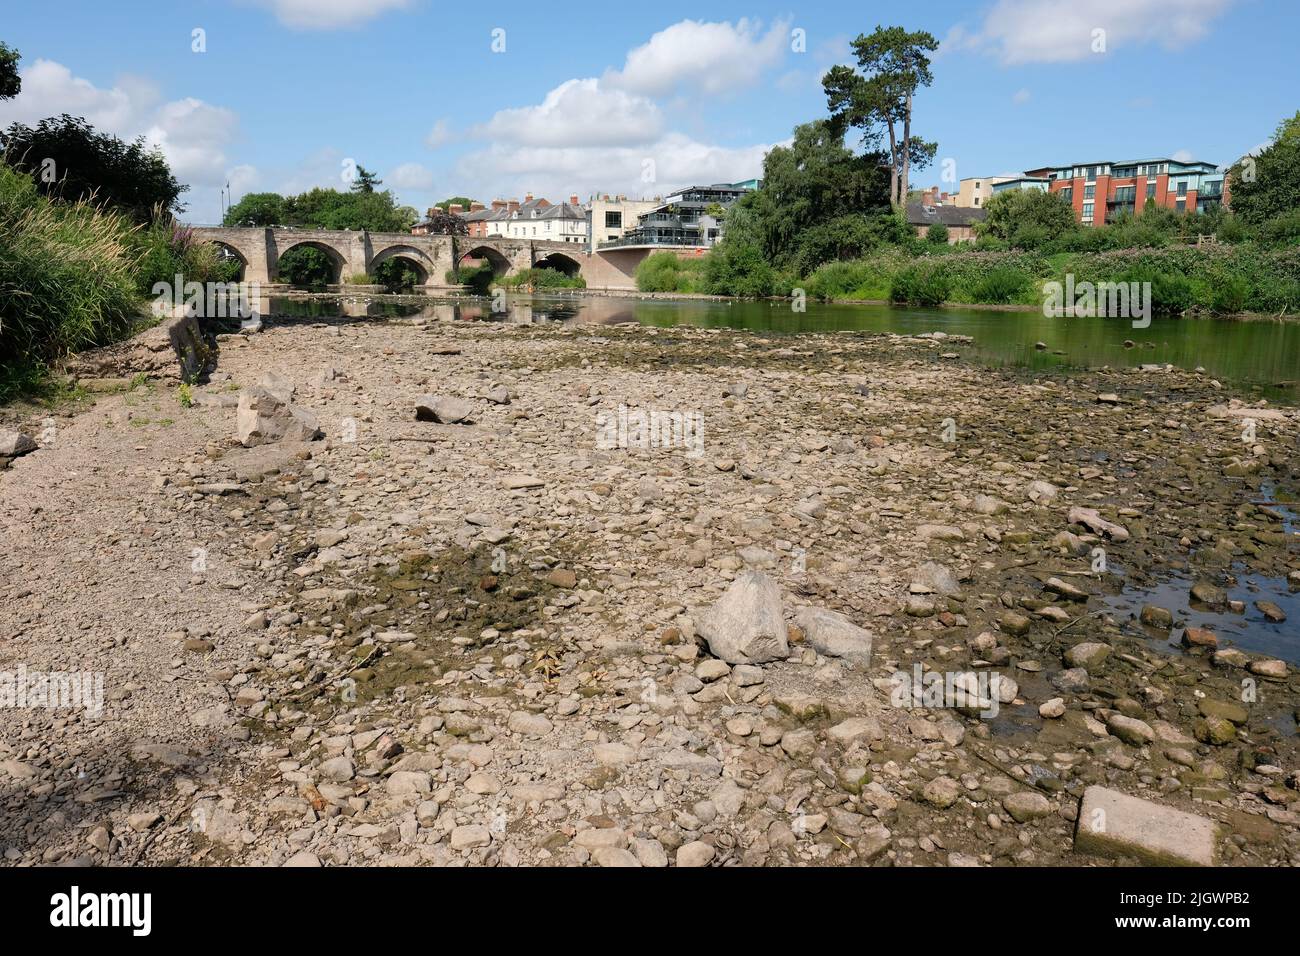 River Wye, Hereford, Herefordshire, Royaume-Uni – mercredi 13th juillet 2022 – le niveau de la rivière Wye, qui traverse la ville d'Hereford, est très peu exposé sur les parties du lit de la rivière. La jauge de niveau de la rivière de l'Agence de l'environnement de la ville a enregistré une valeur de moins de 10cm aujourd'hui. La température de l'eau de la rivière a été enregistrée hier à 20c, ce qui représentait une menace pour les poissons dans la rivière. Les prévisions météorologiques locales ne montrent aucune pluie la semaine suivante pendant une période de sécheresse chaude prolongée. Photo Steven May / Alamy Live News Banque D'Images